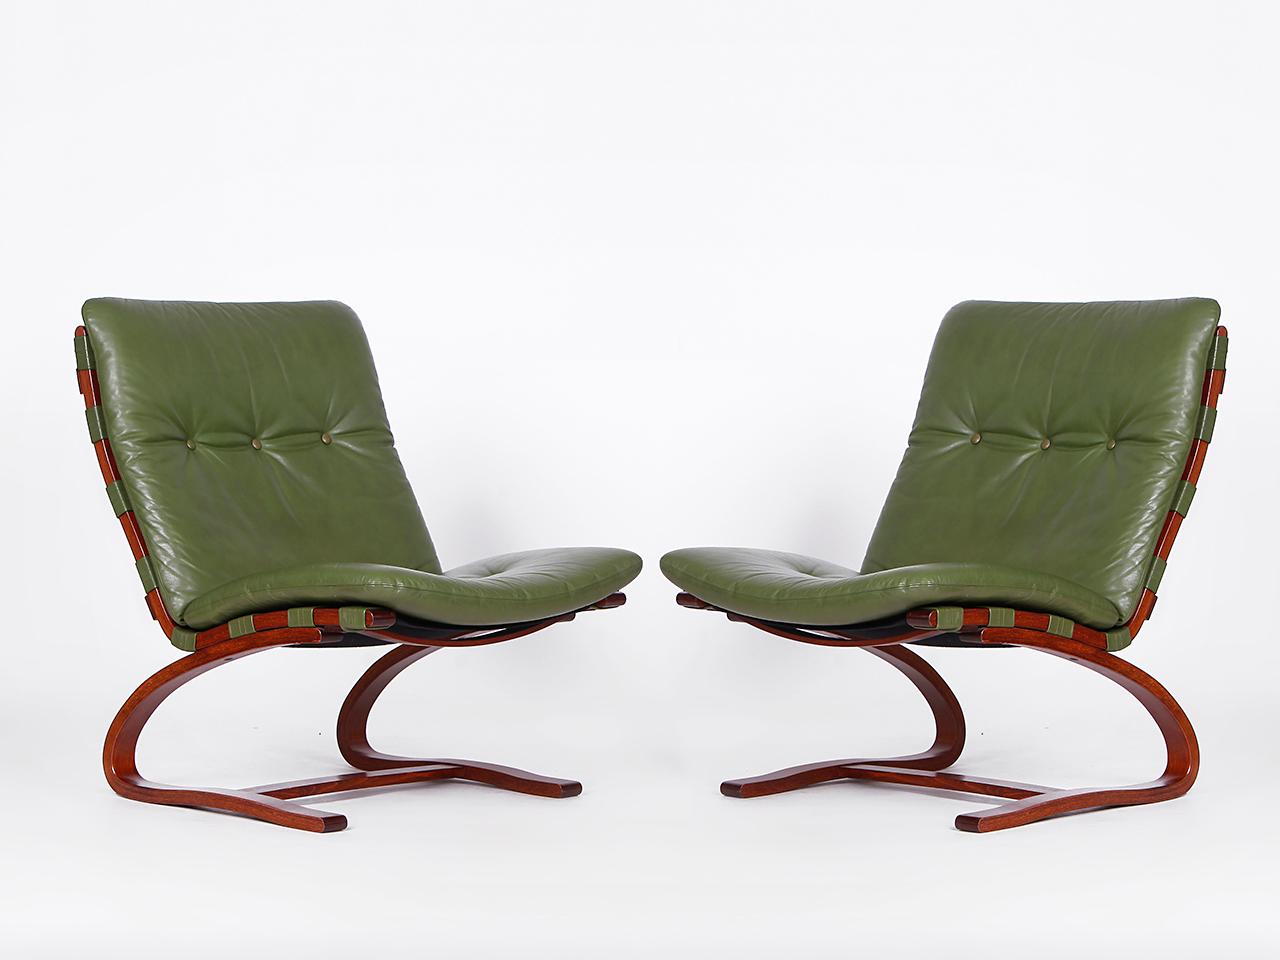 Diese 4  Die Lederstühle aus den 1960er Jahren sind in einem außergewöhnlich guten Originalzustand.
Der alte Ledereinband in einem stilvollen Grün wurde nachweislich sehr selten benutzt. Ingmar Relling ist
gilt als Ikone des skandinavischen Designs.